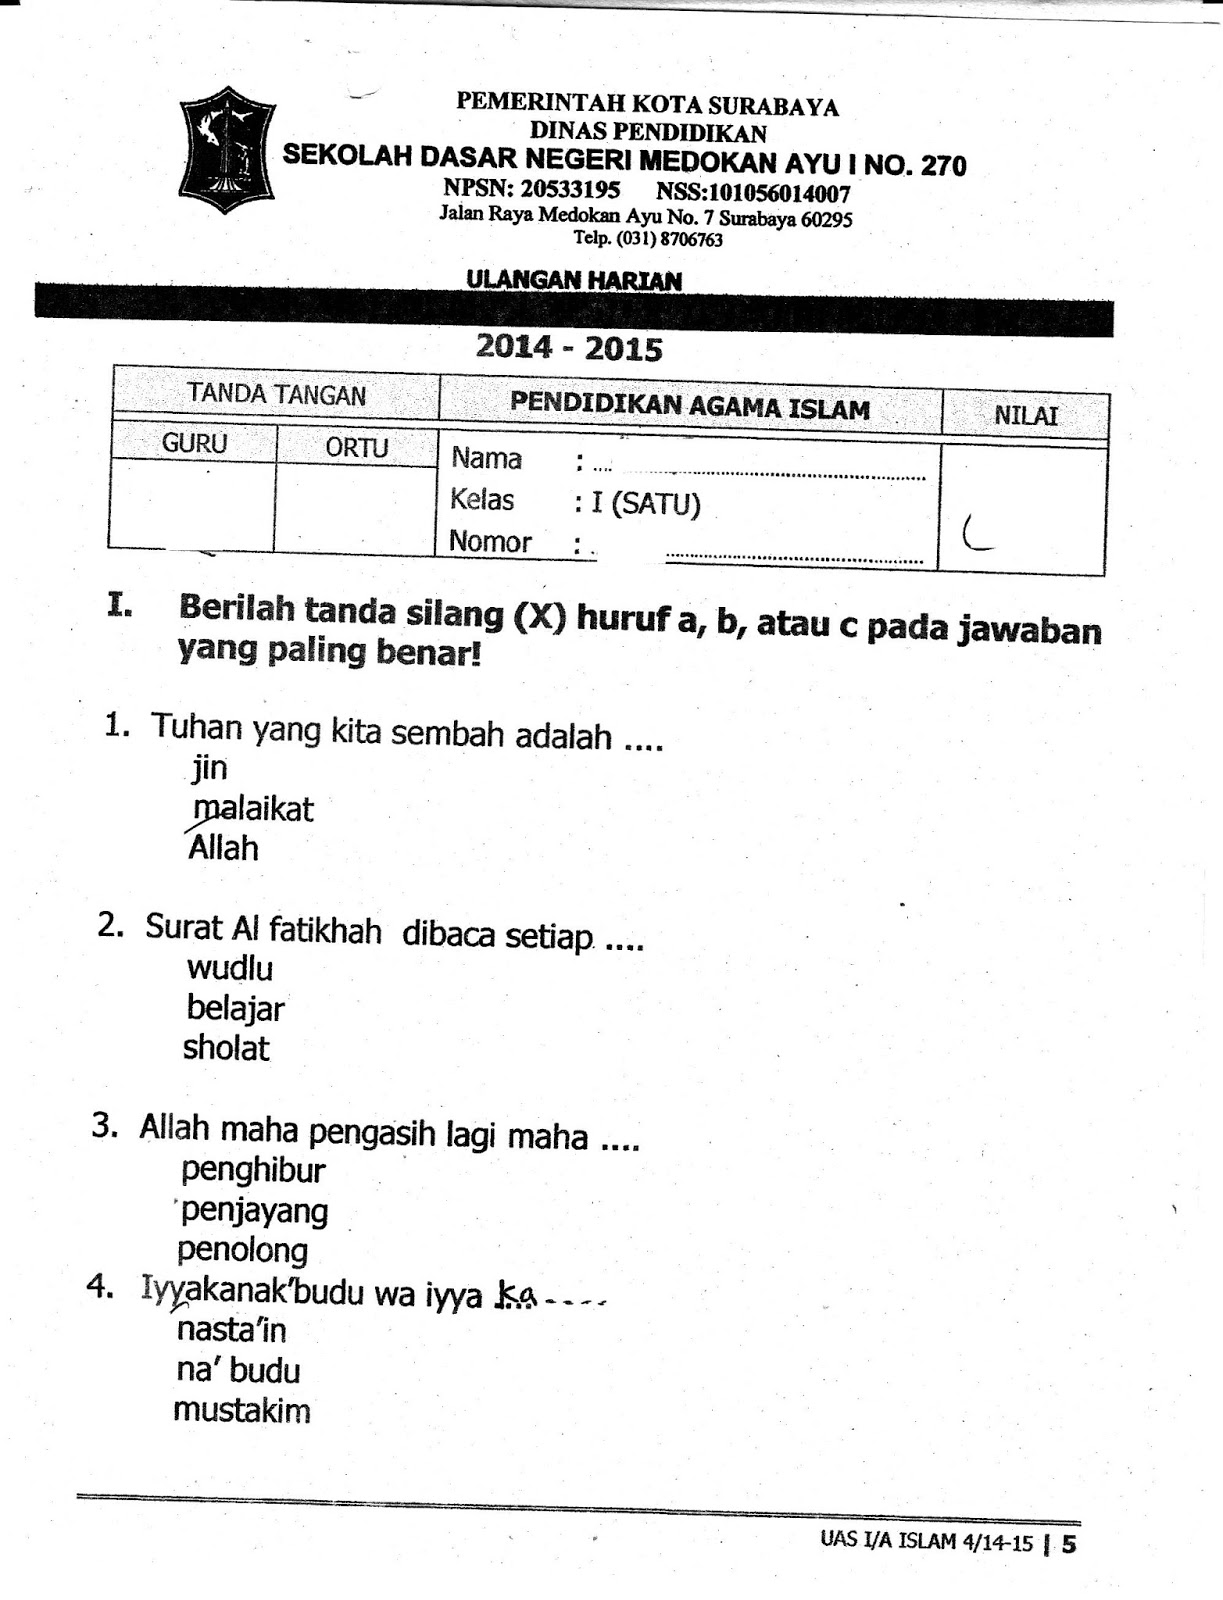 Download Soal Ukk Agama Islam K 2006 Smp Kls 8